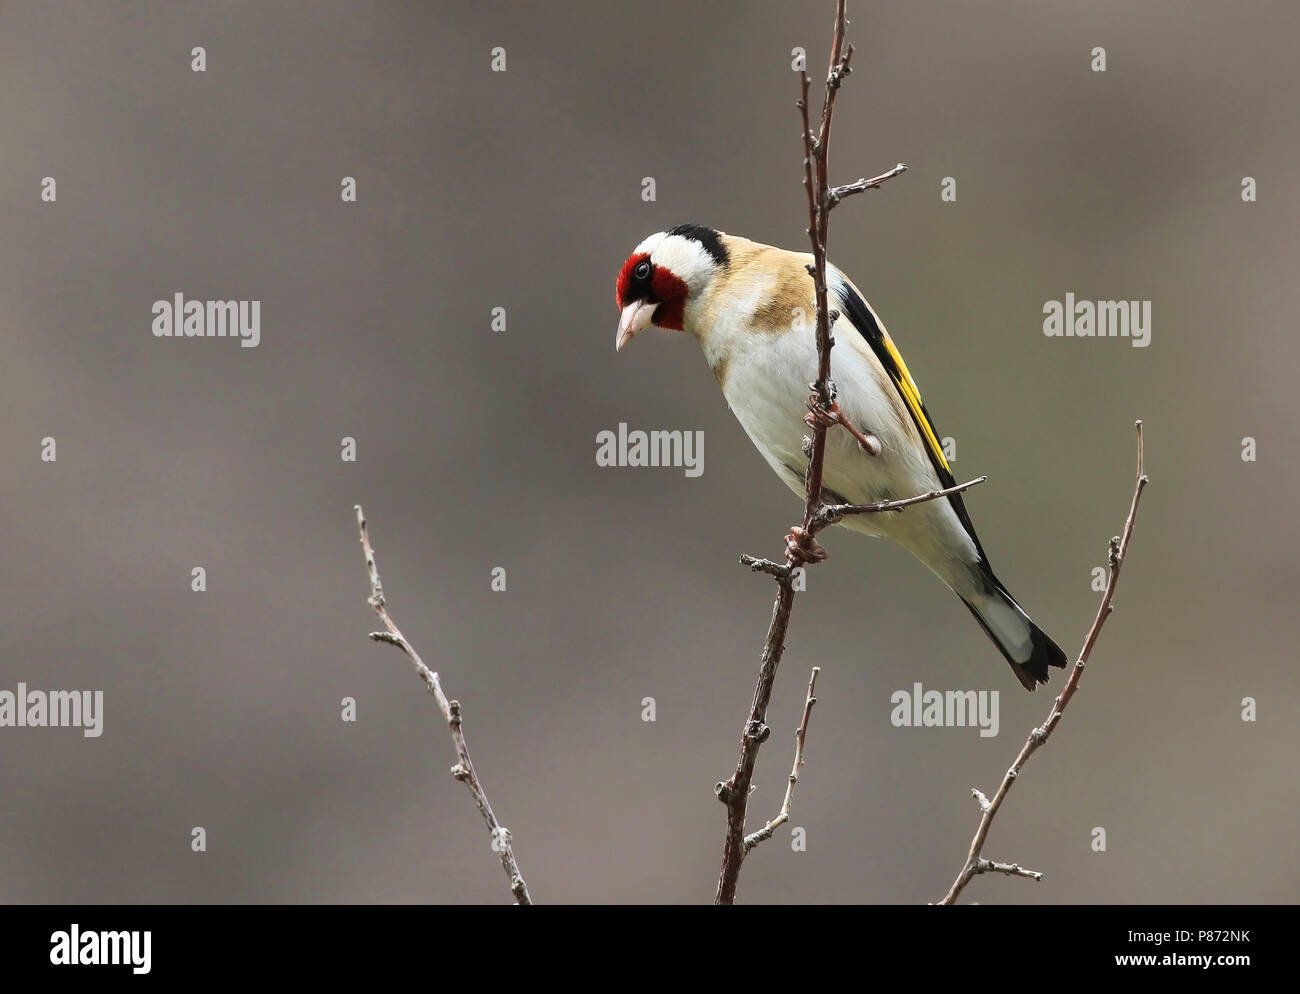 Immagine di uccelli da uccello europeo Foto Stock